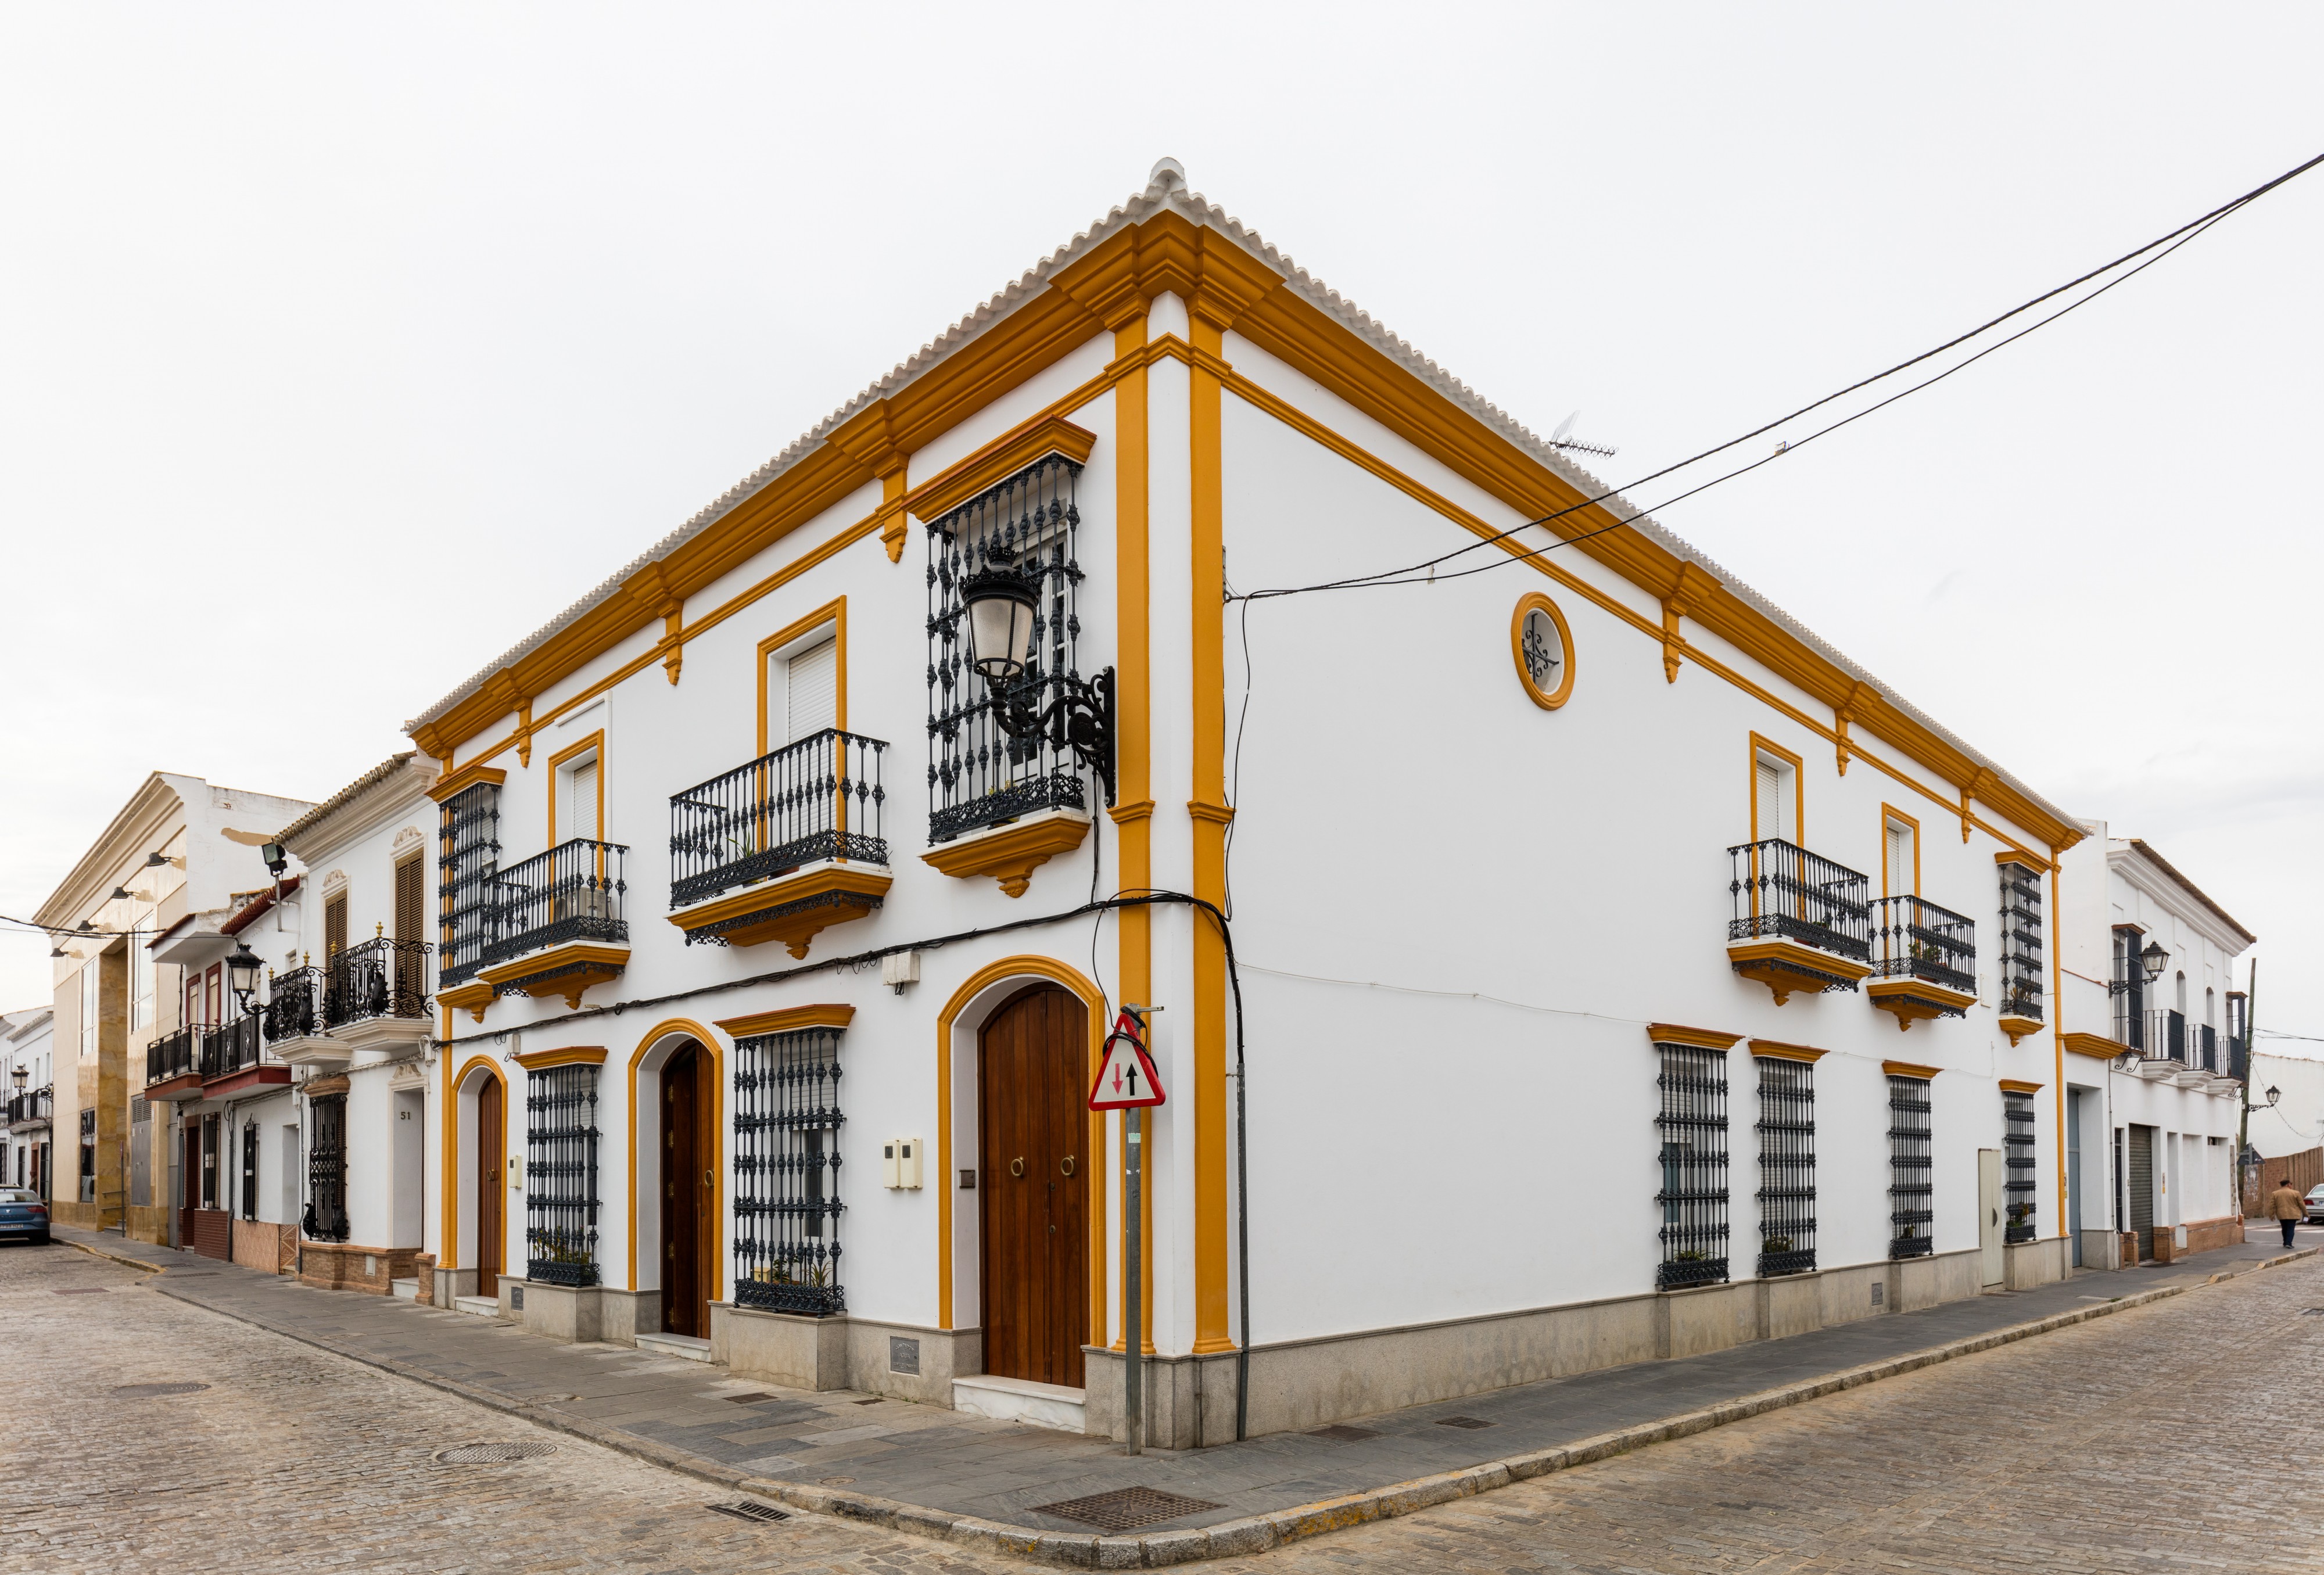 Casa en calle Sevilla 53, Almonte, Huelva, España, 2015-12-07, DD 05